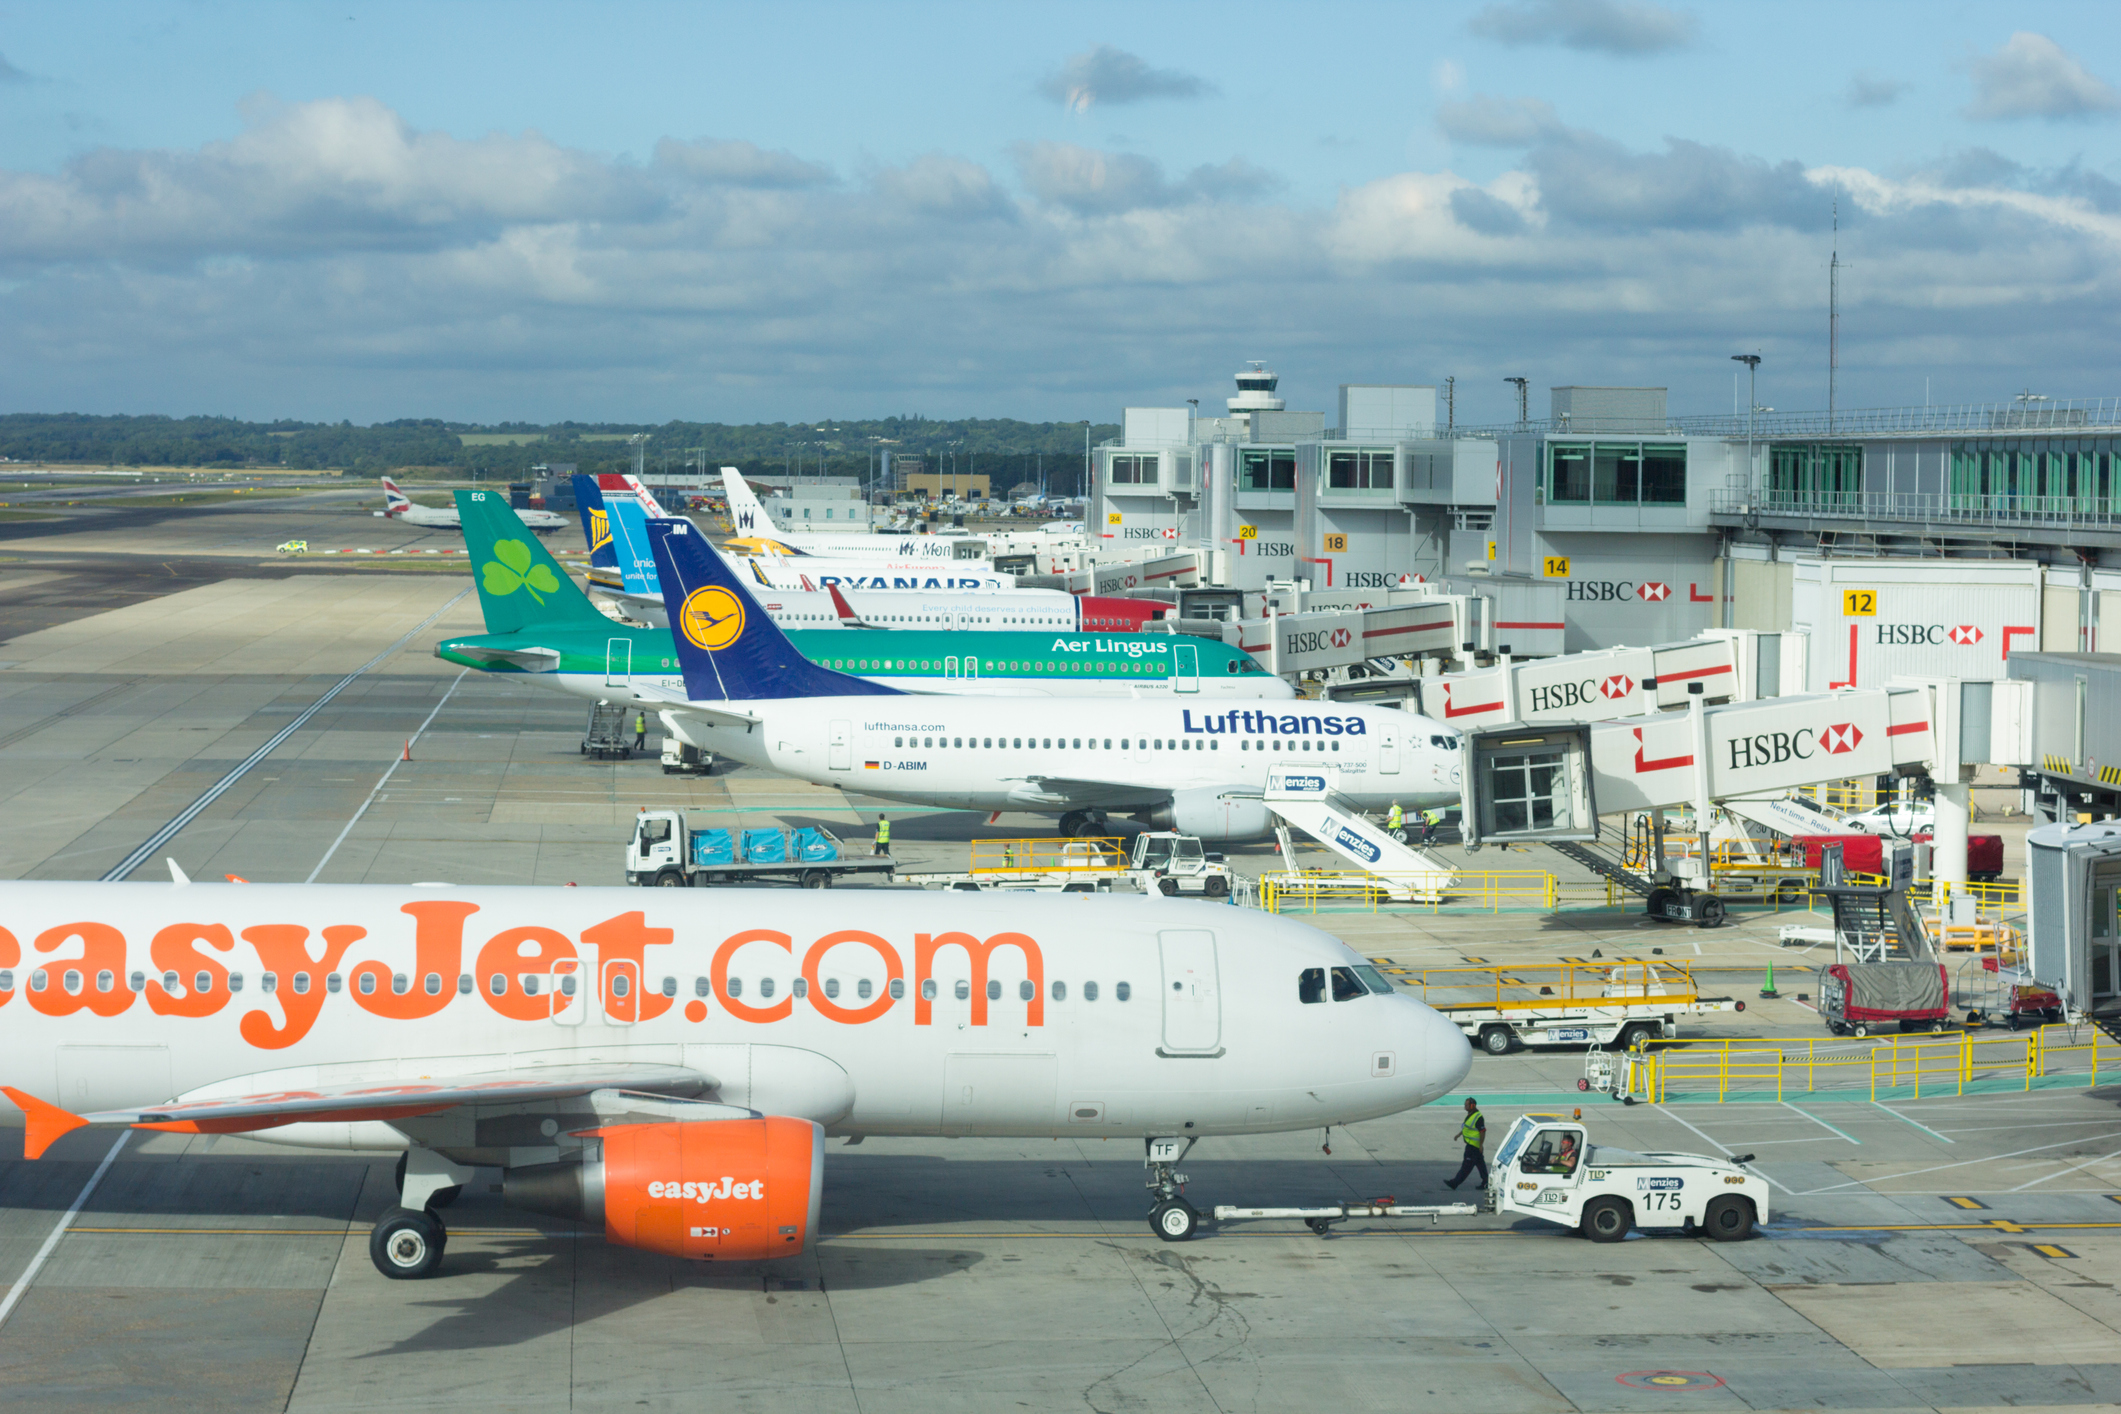 Verschillende vliegtuigen van verschillende luchtvaartmaatschappijen staan achter elkaar opgesteld bij hun respectievelijke gates.